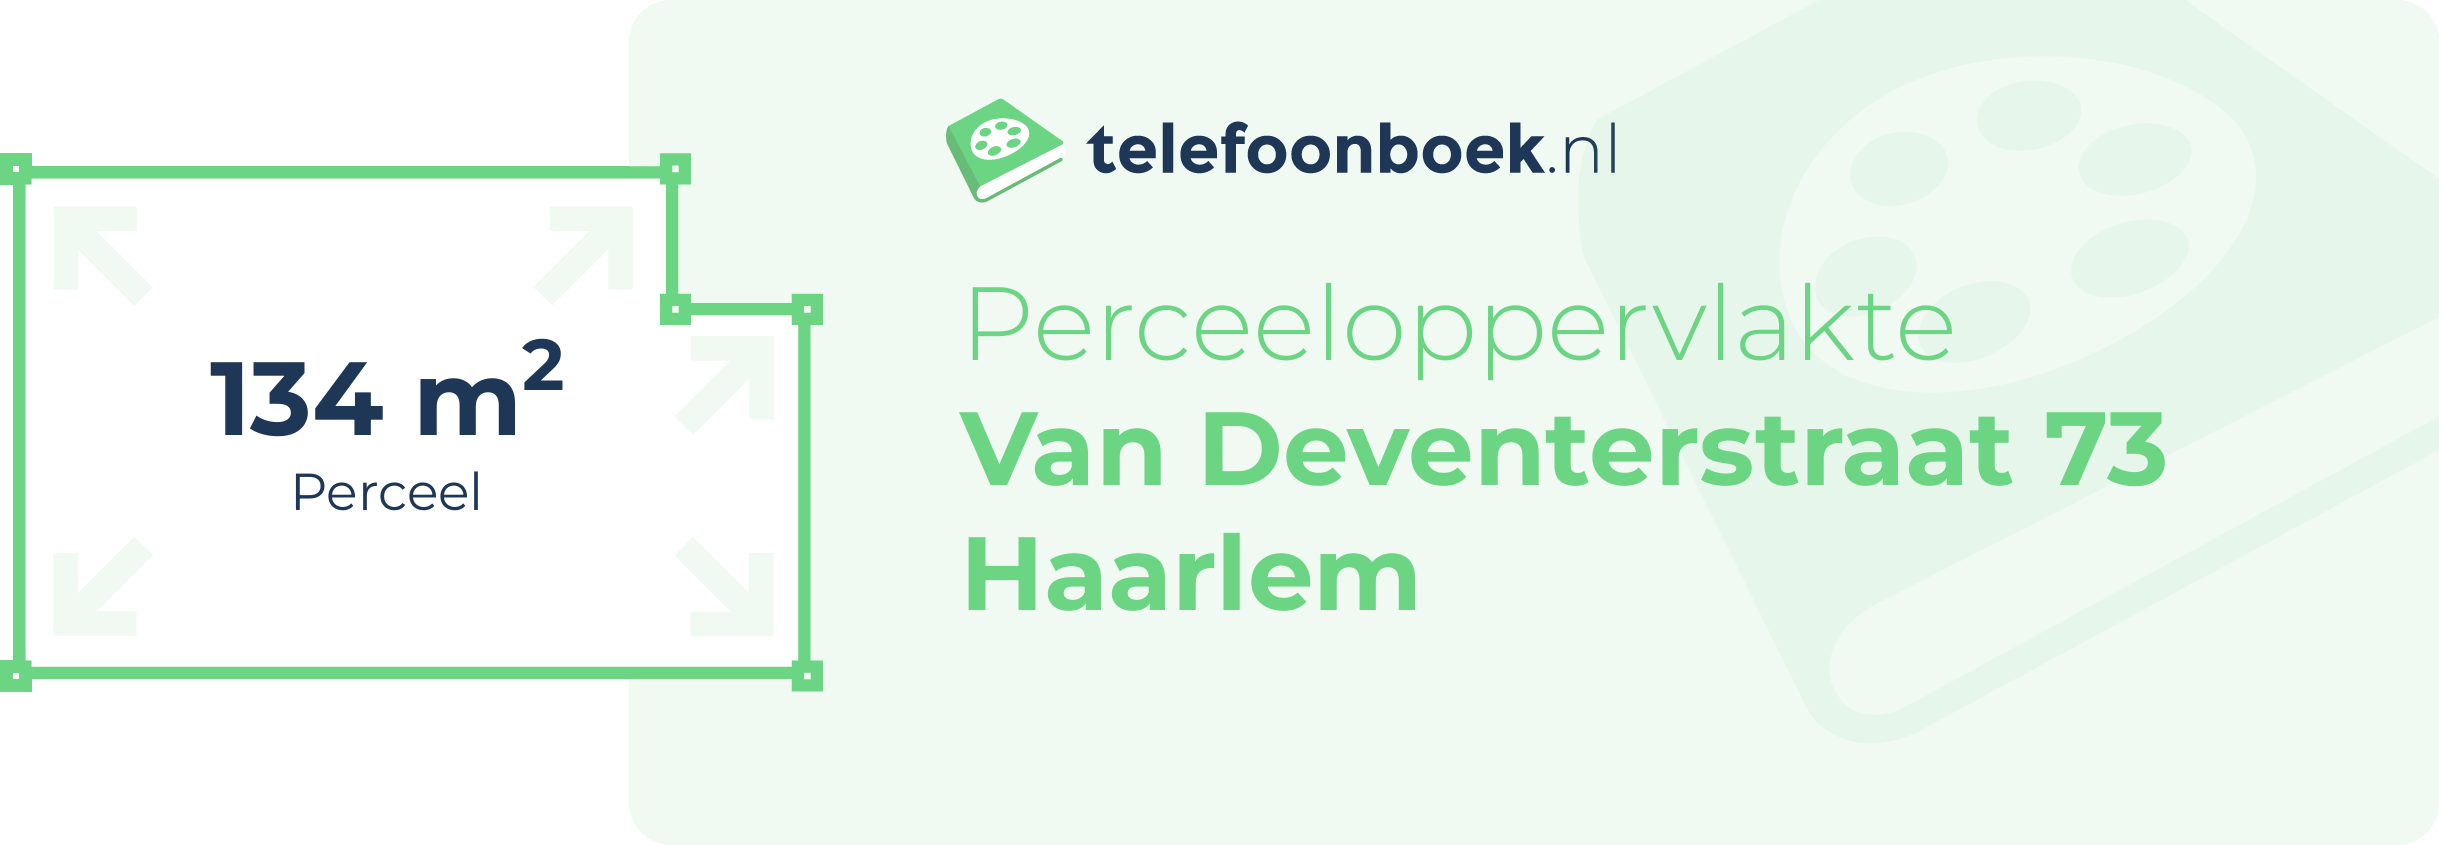 Perceeloppervlakte Van Deventerstraat 73 Haarlem